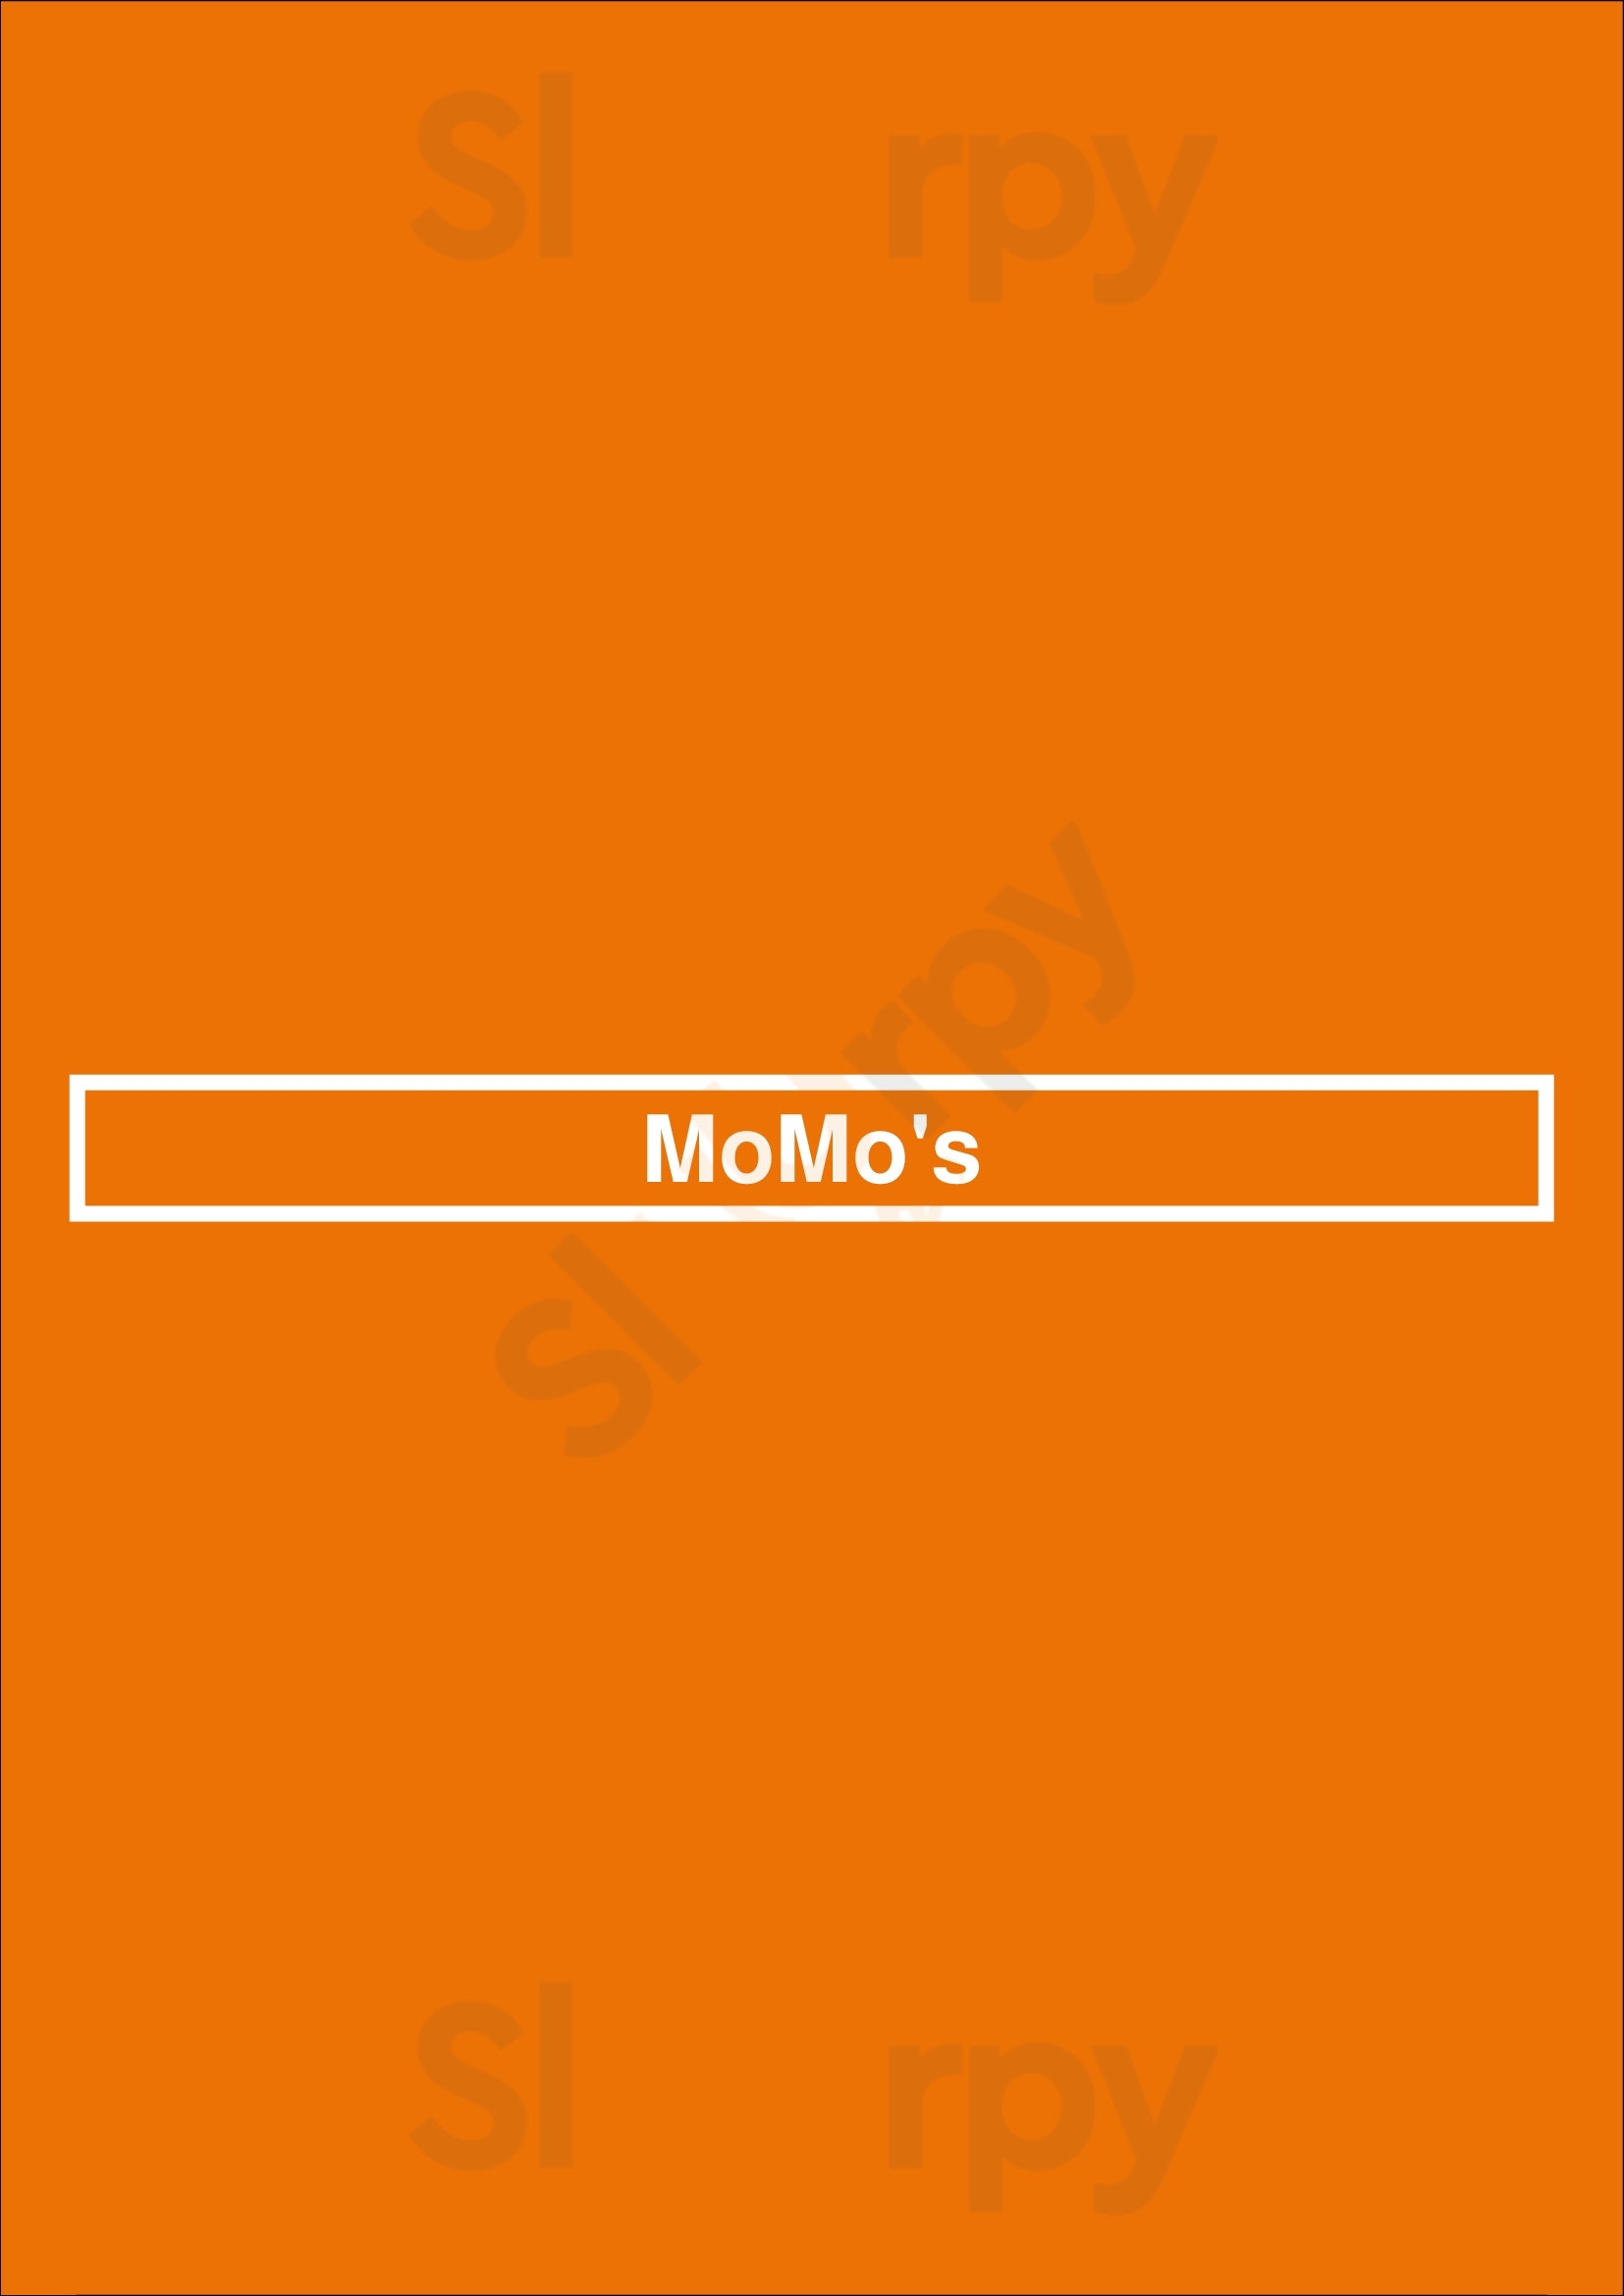 Momo's Dallas Menu - 1